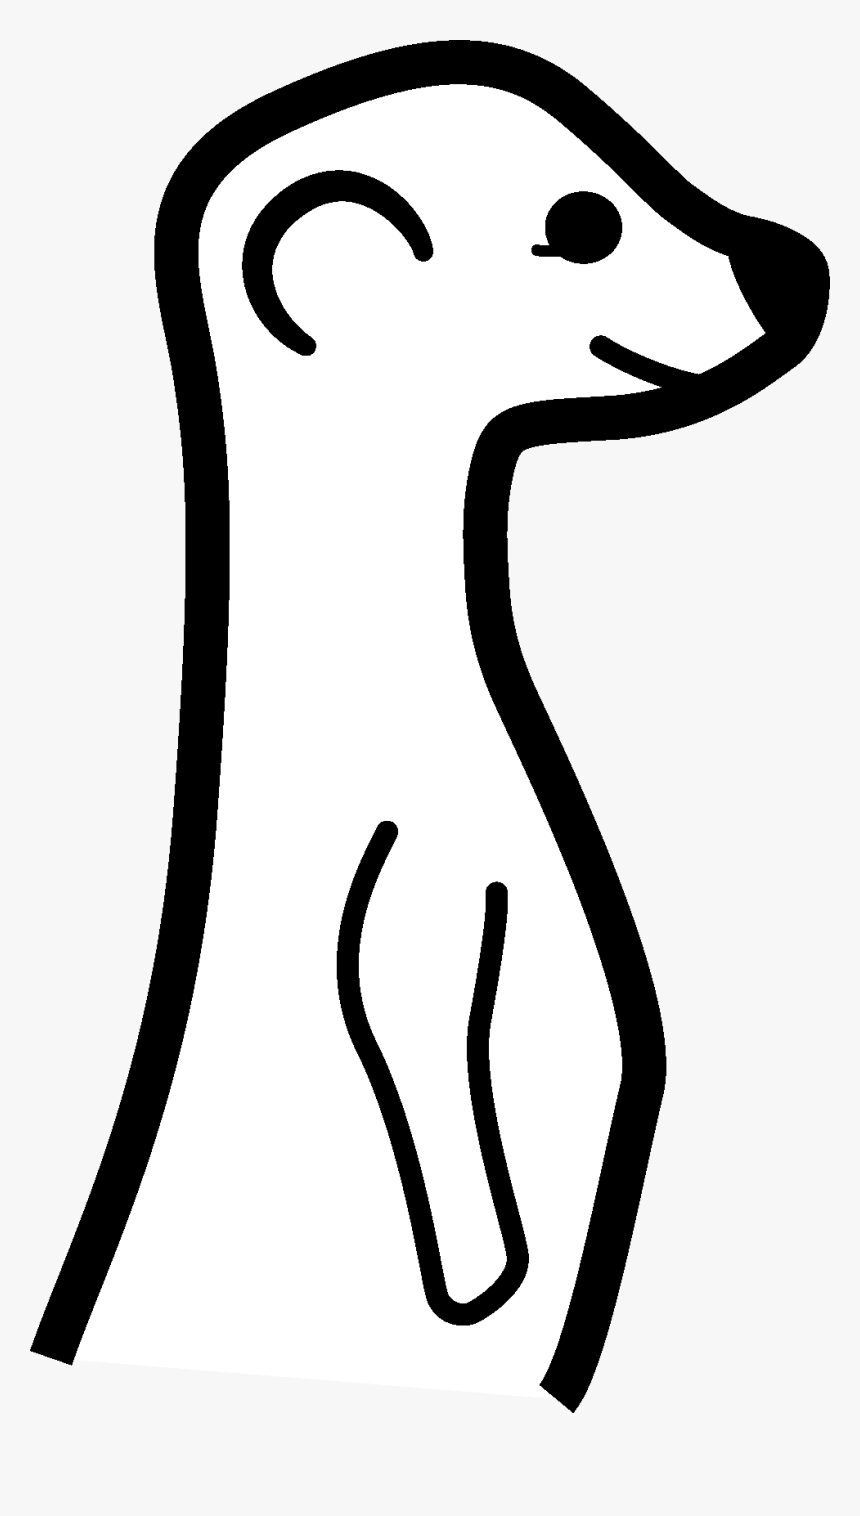 Meerkat Logo Png - Erdmännchen Schwarz Weiß Zeichnung, Transparent Png, Free Download